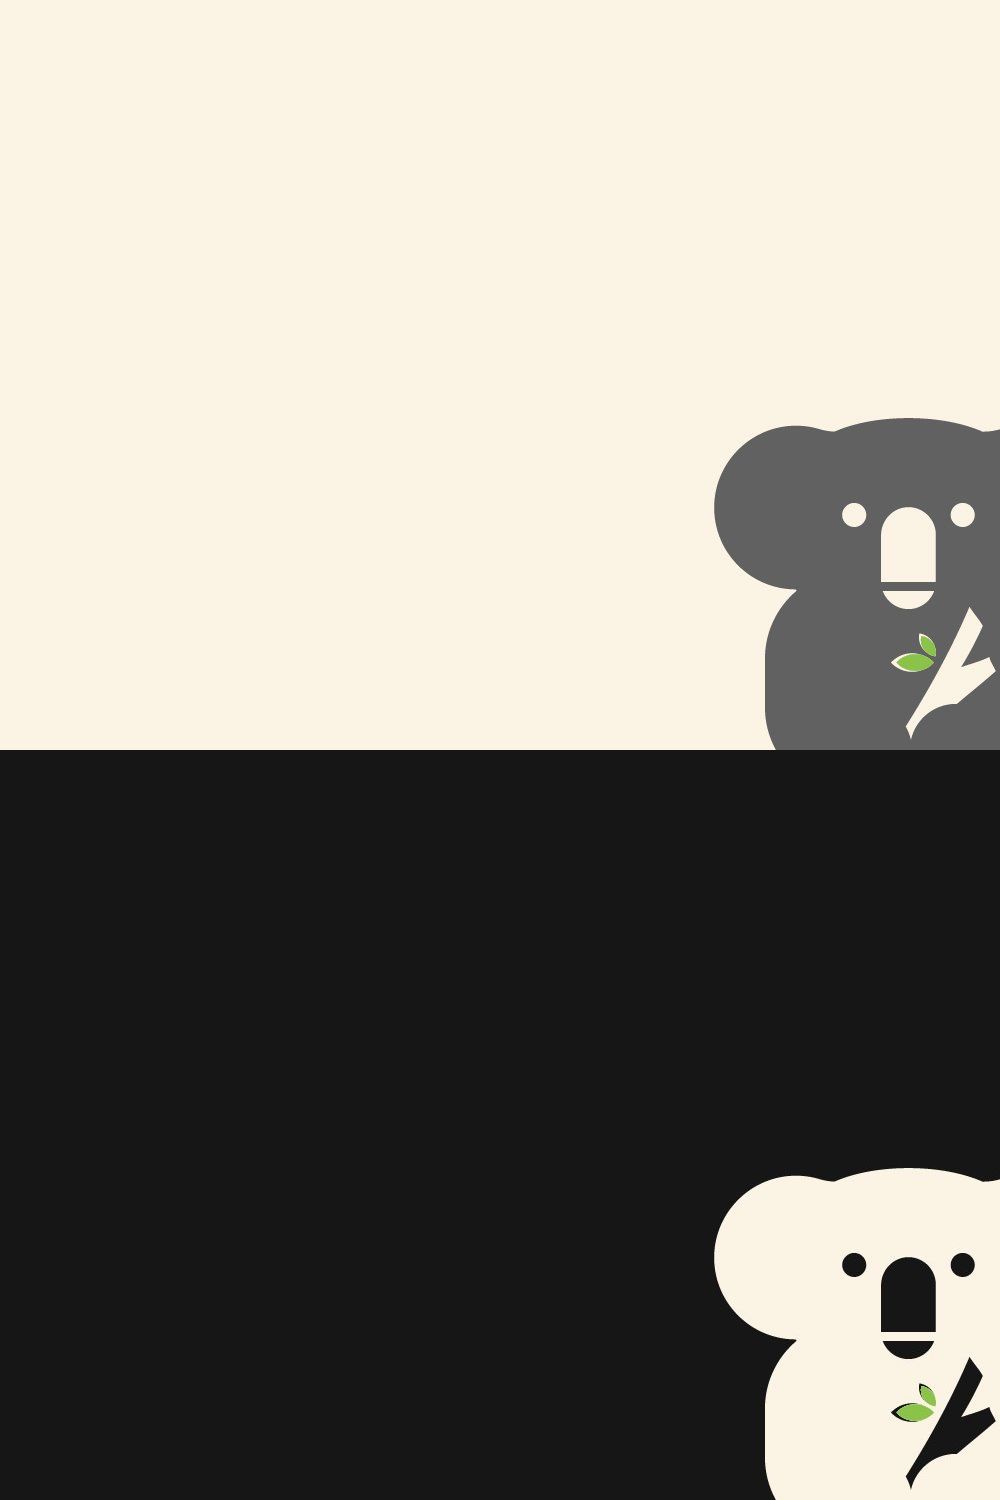 Koala logo icon design vector pinterest preview image.